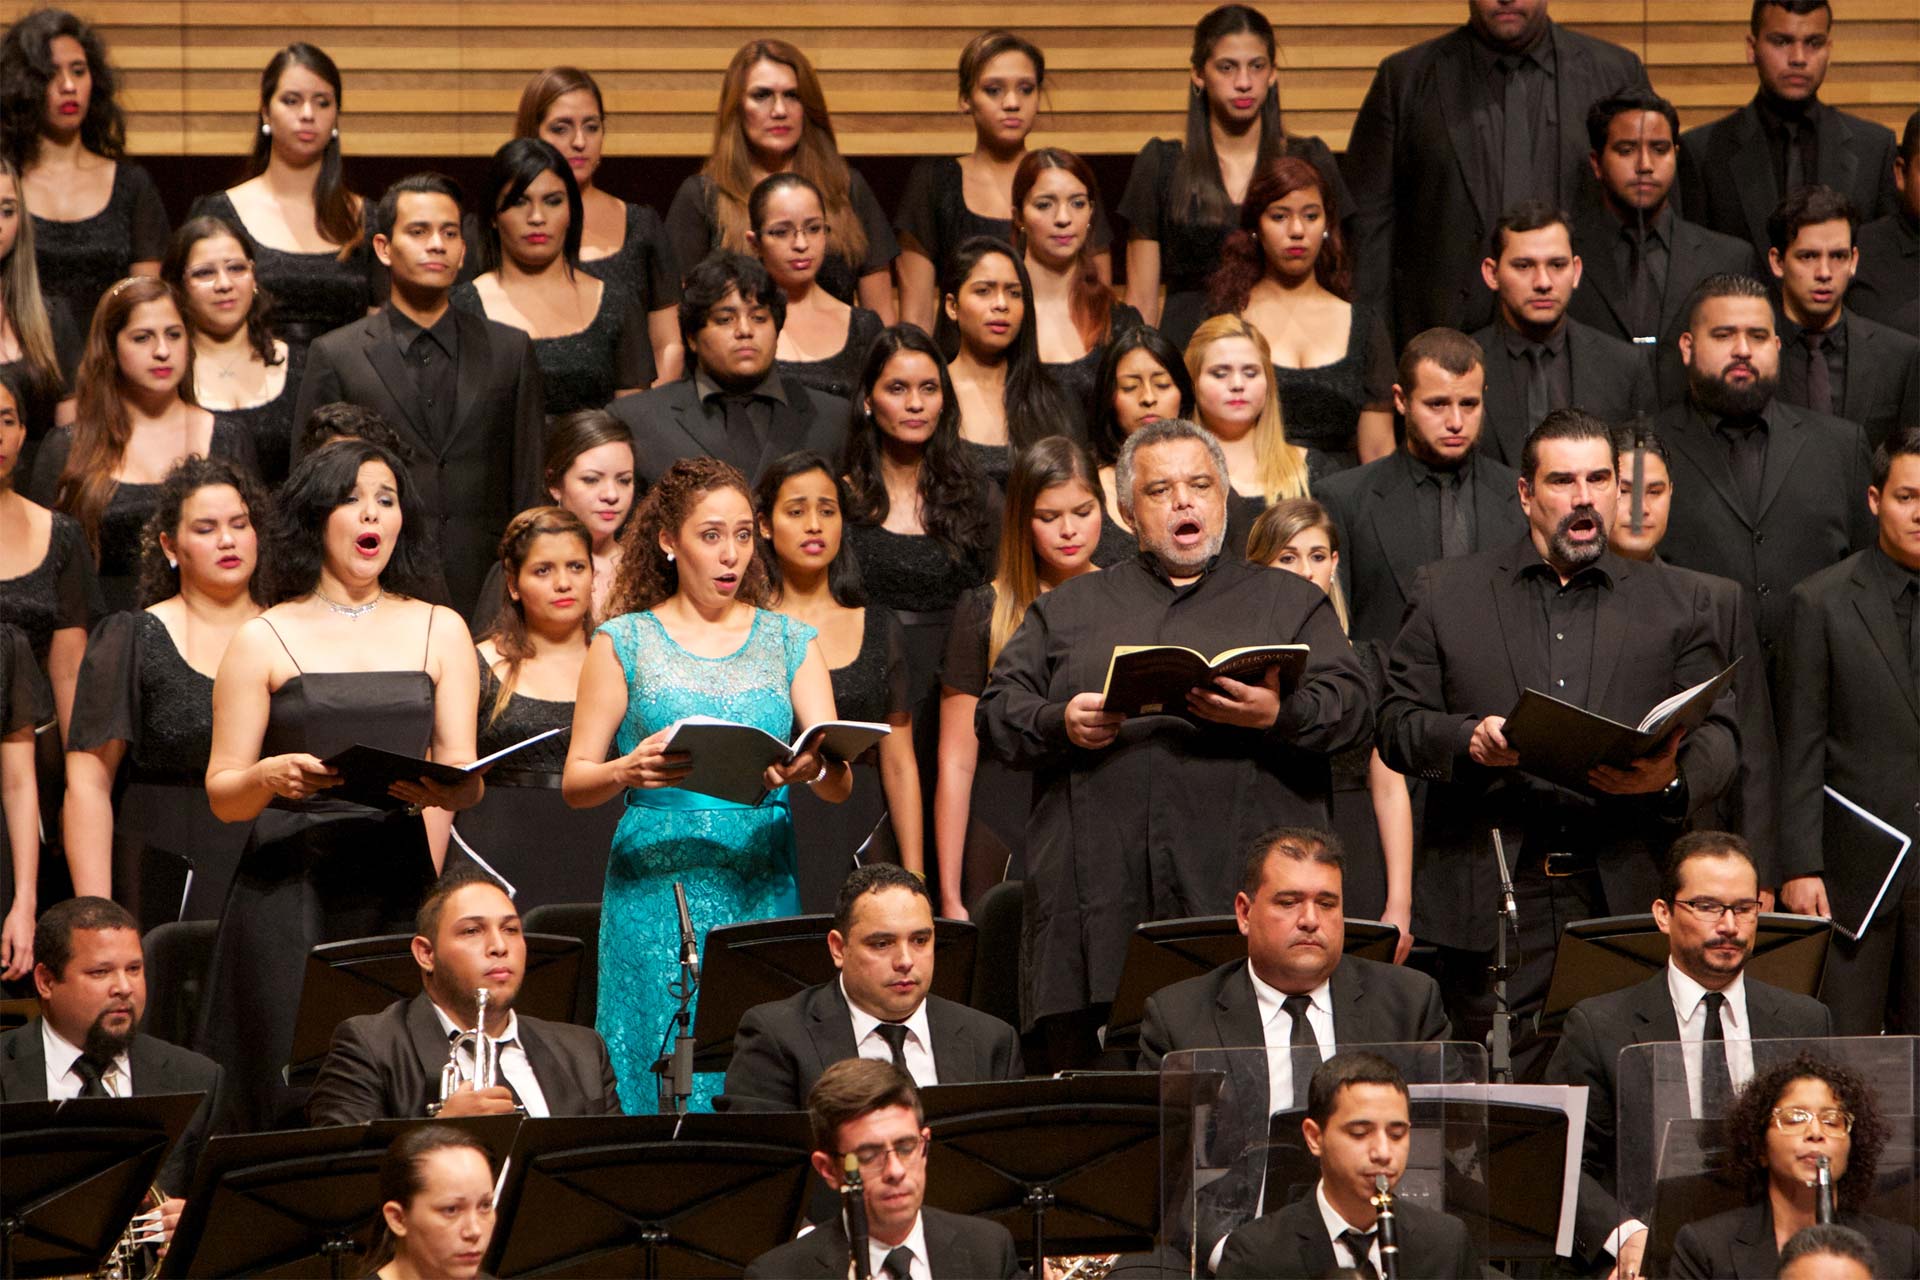 La agrupación venezolana se presentará en la Catedral de Notre Dame de París. Ya cantó en Lisboa y Nantes